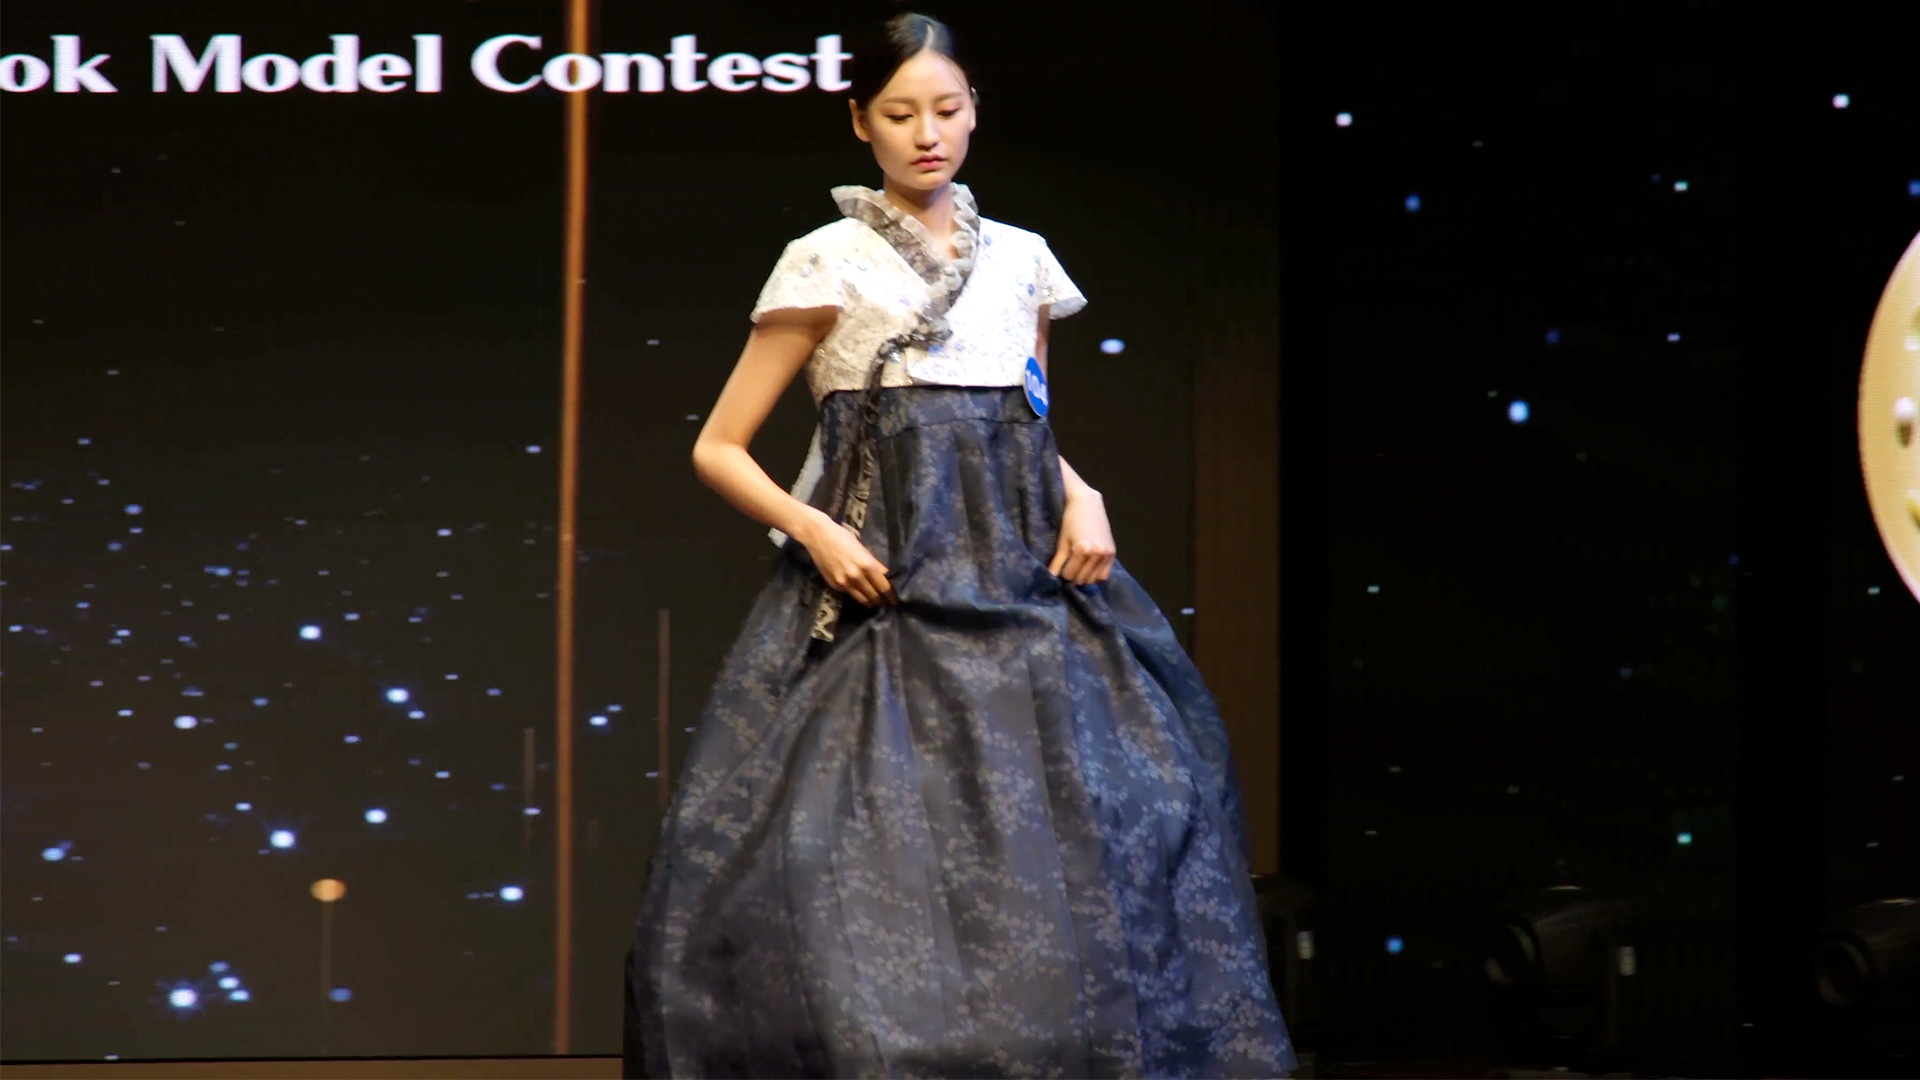 민소매에 가까운 반소매 디자인 한복을 입은 참가자 | 박재현/에포크타임스